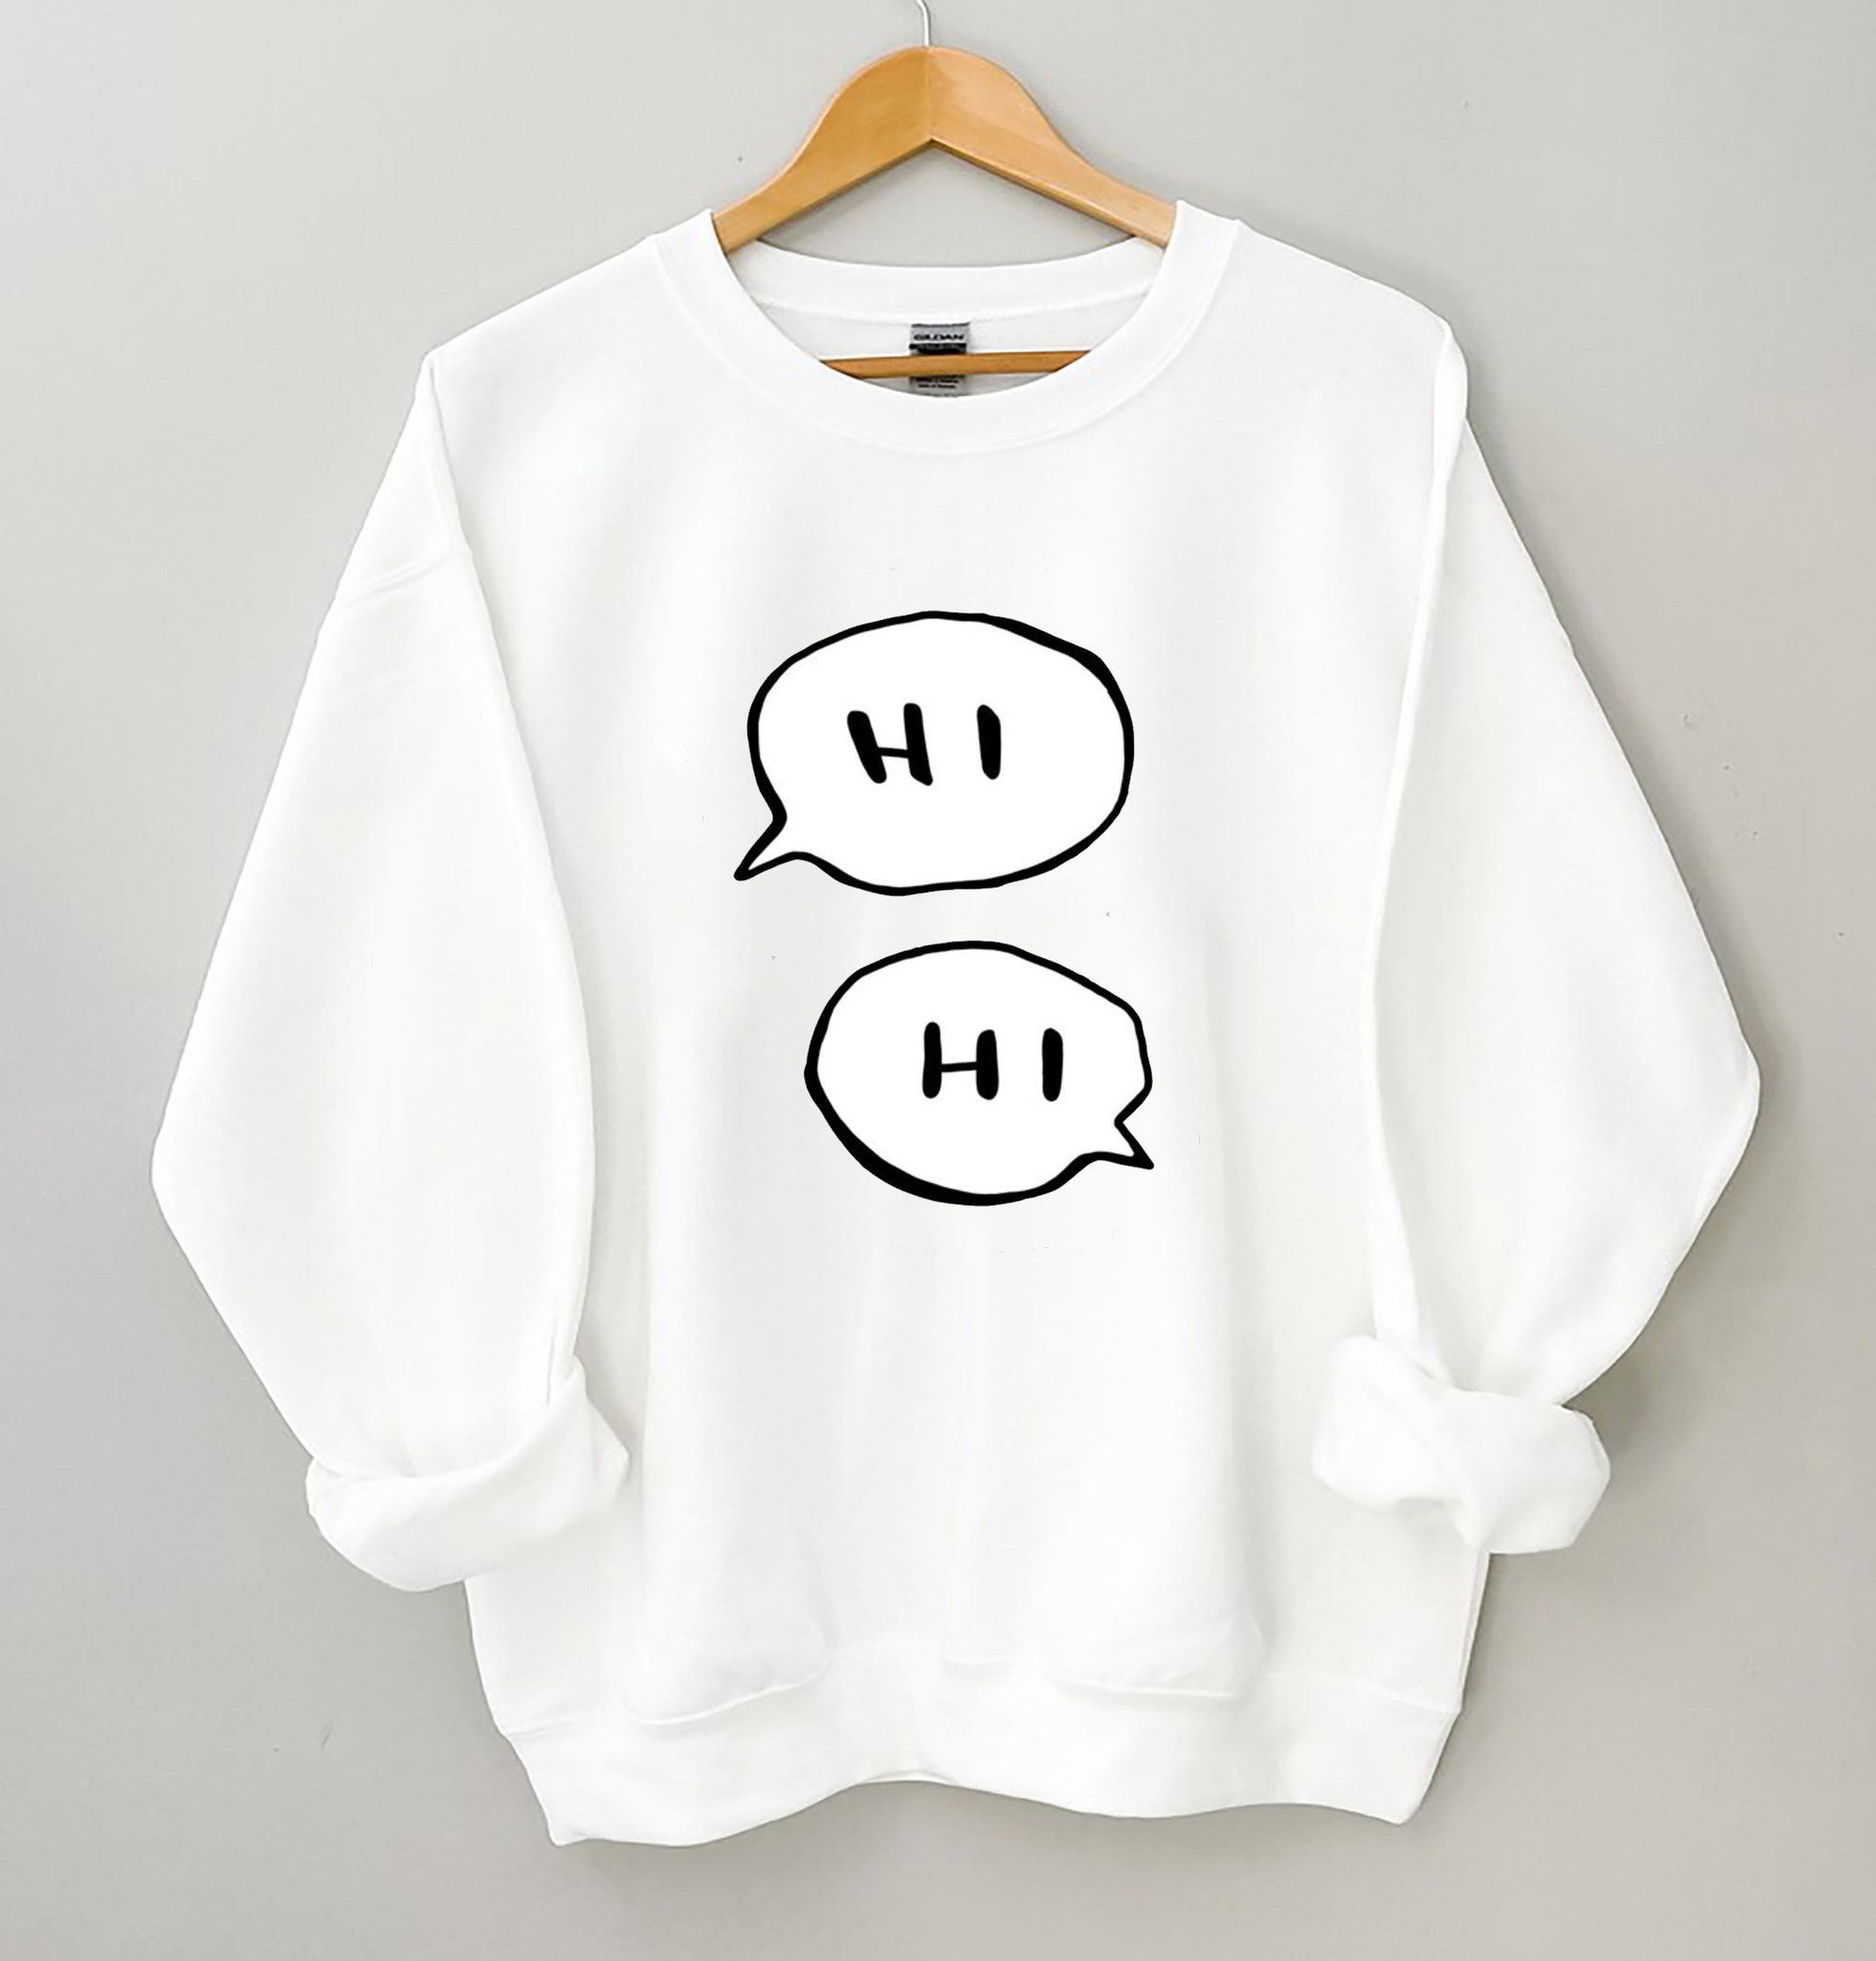 Hi Hi Heartstopper Sweatshirt, Heartstopper Hi Sweater